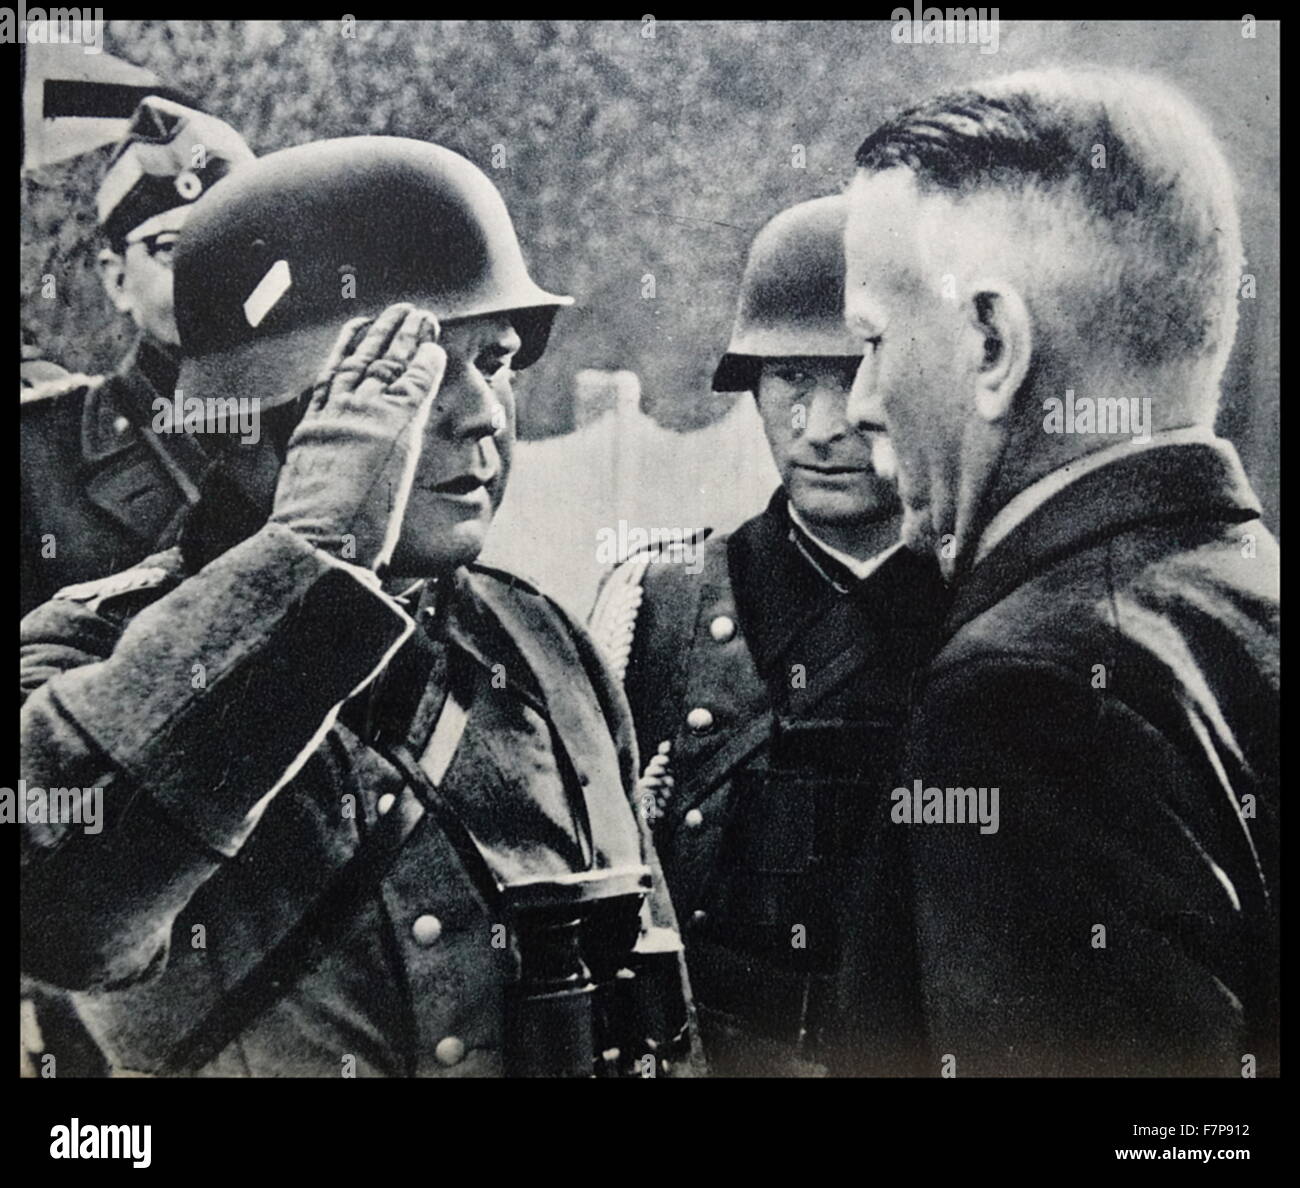 Ein deutscher Nazi-Offizier der dänische General Jakobson über den Abschluss der Verhandlungen mit der dänischen Regierung zu informieren. Während der Invasion von Dänemark, während des zweiten Weltkriegs, 1940. Stockfoto